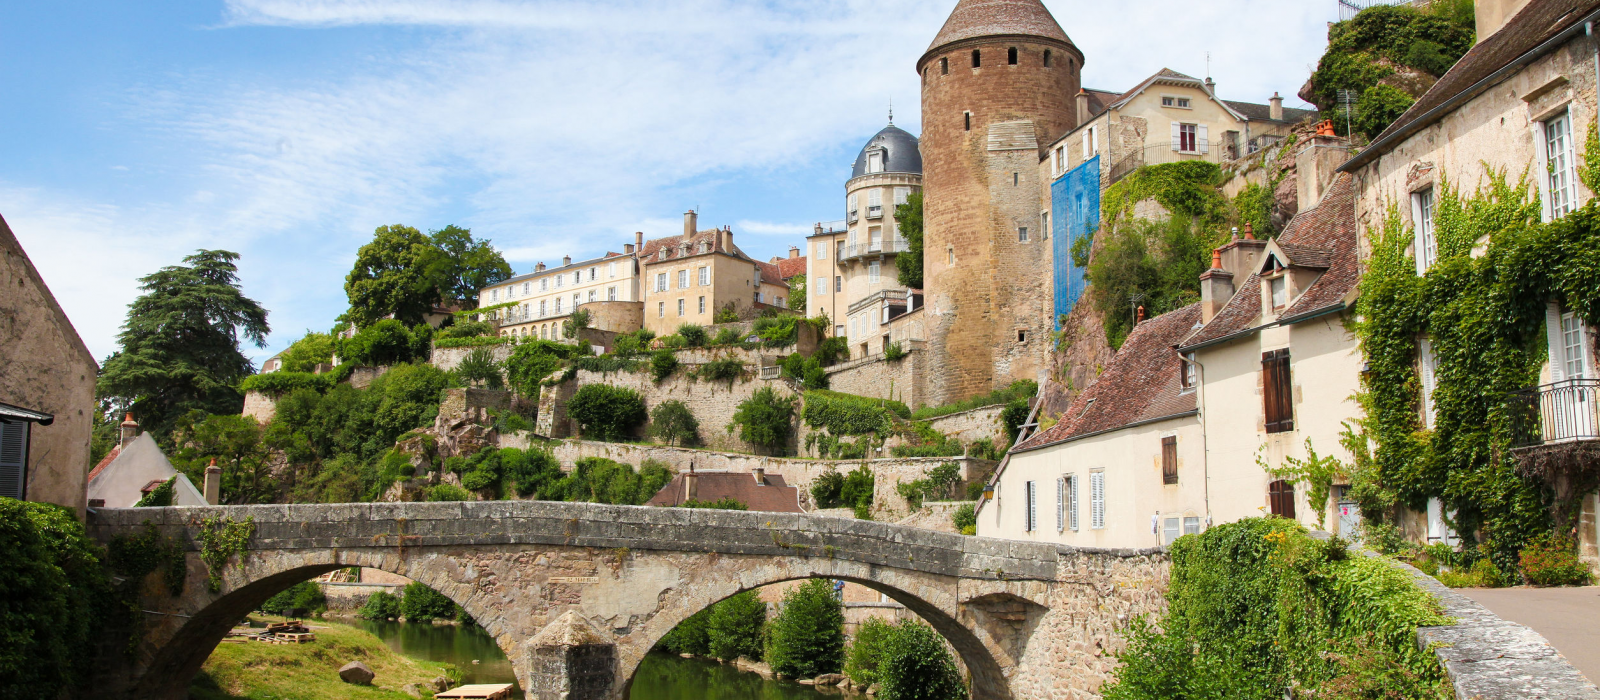 « Slow Tourisme » le long du Canal de Bourgogne